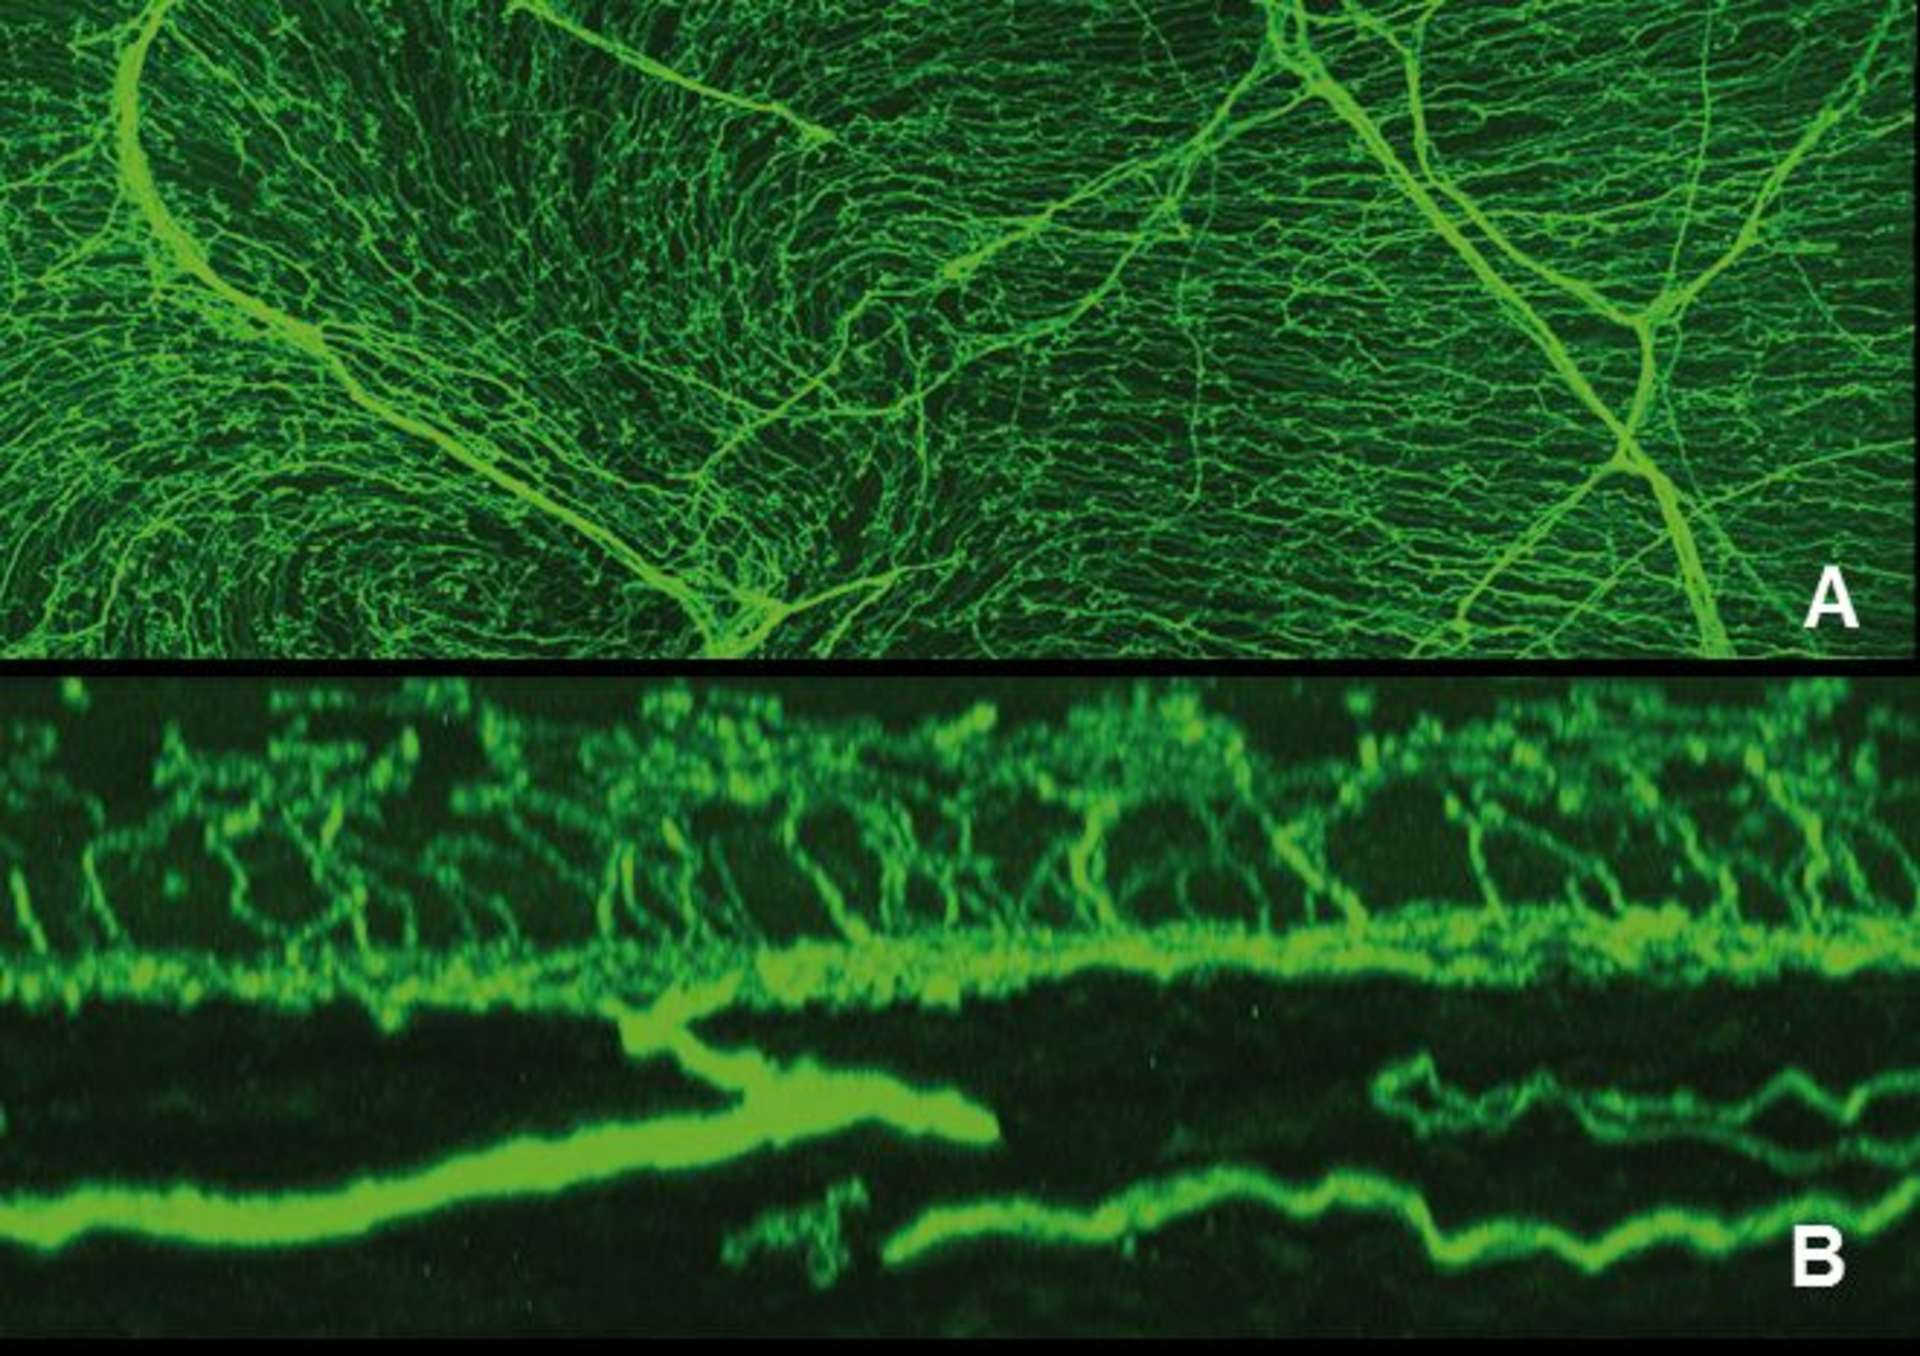 Figure 1. Innervation cornéenne vue en microscopie confocale (souris transgénique exprimant une protéine fluorescente dans les axones cornéens).
A. Vue de face. B. Vue en coupe.
